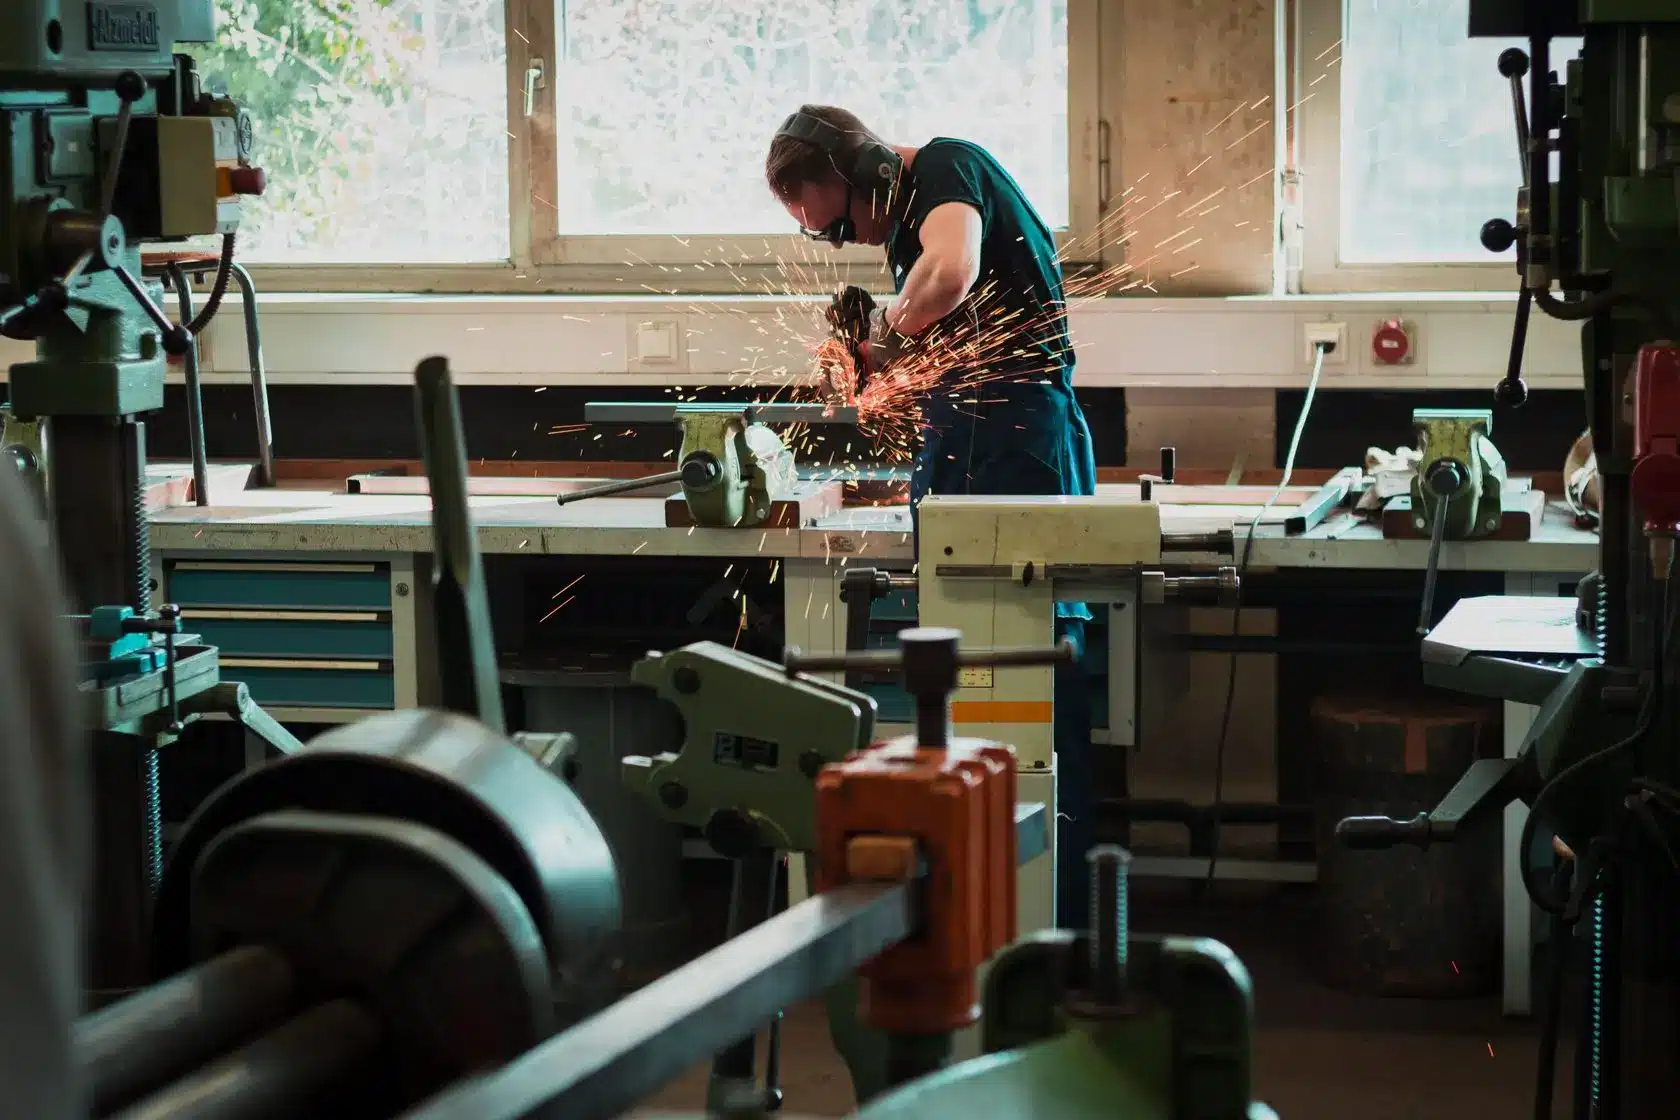 A man wearing PPE solders in a metal working studio.